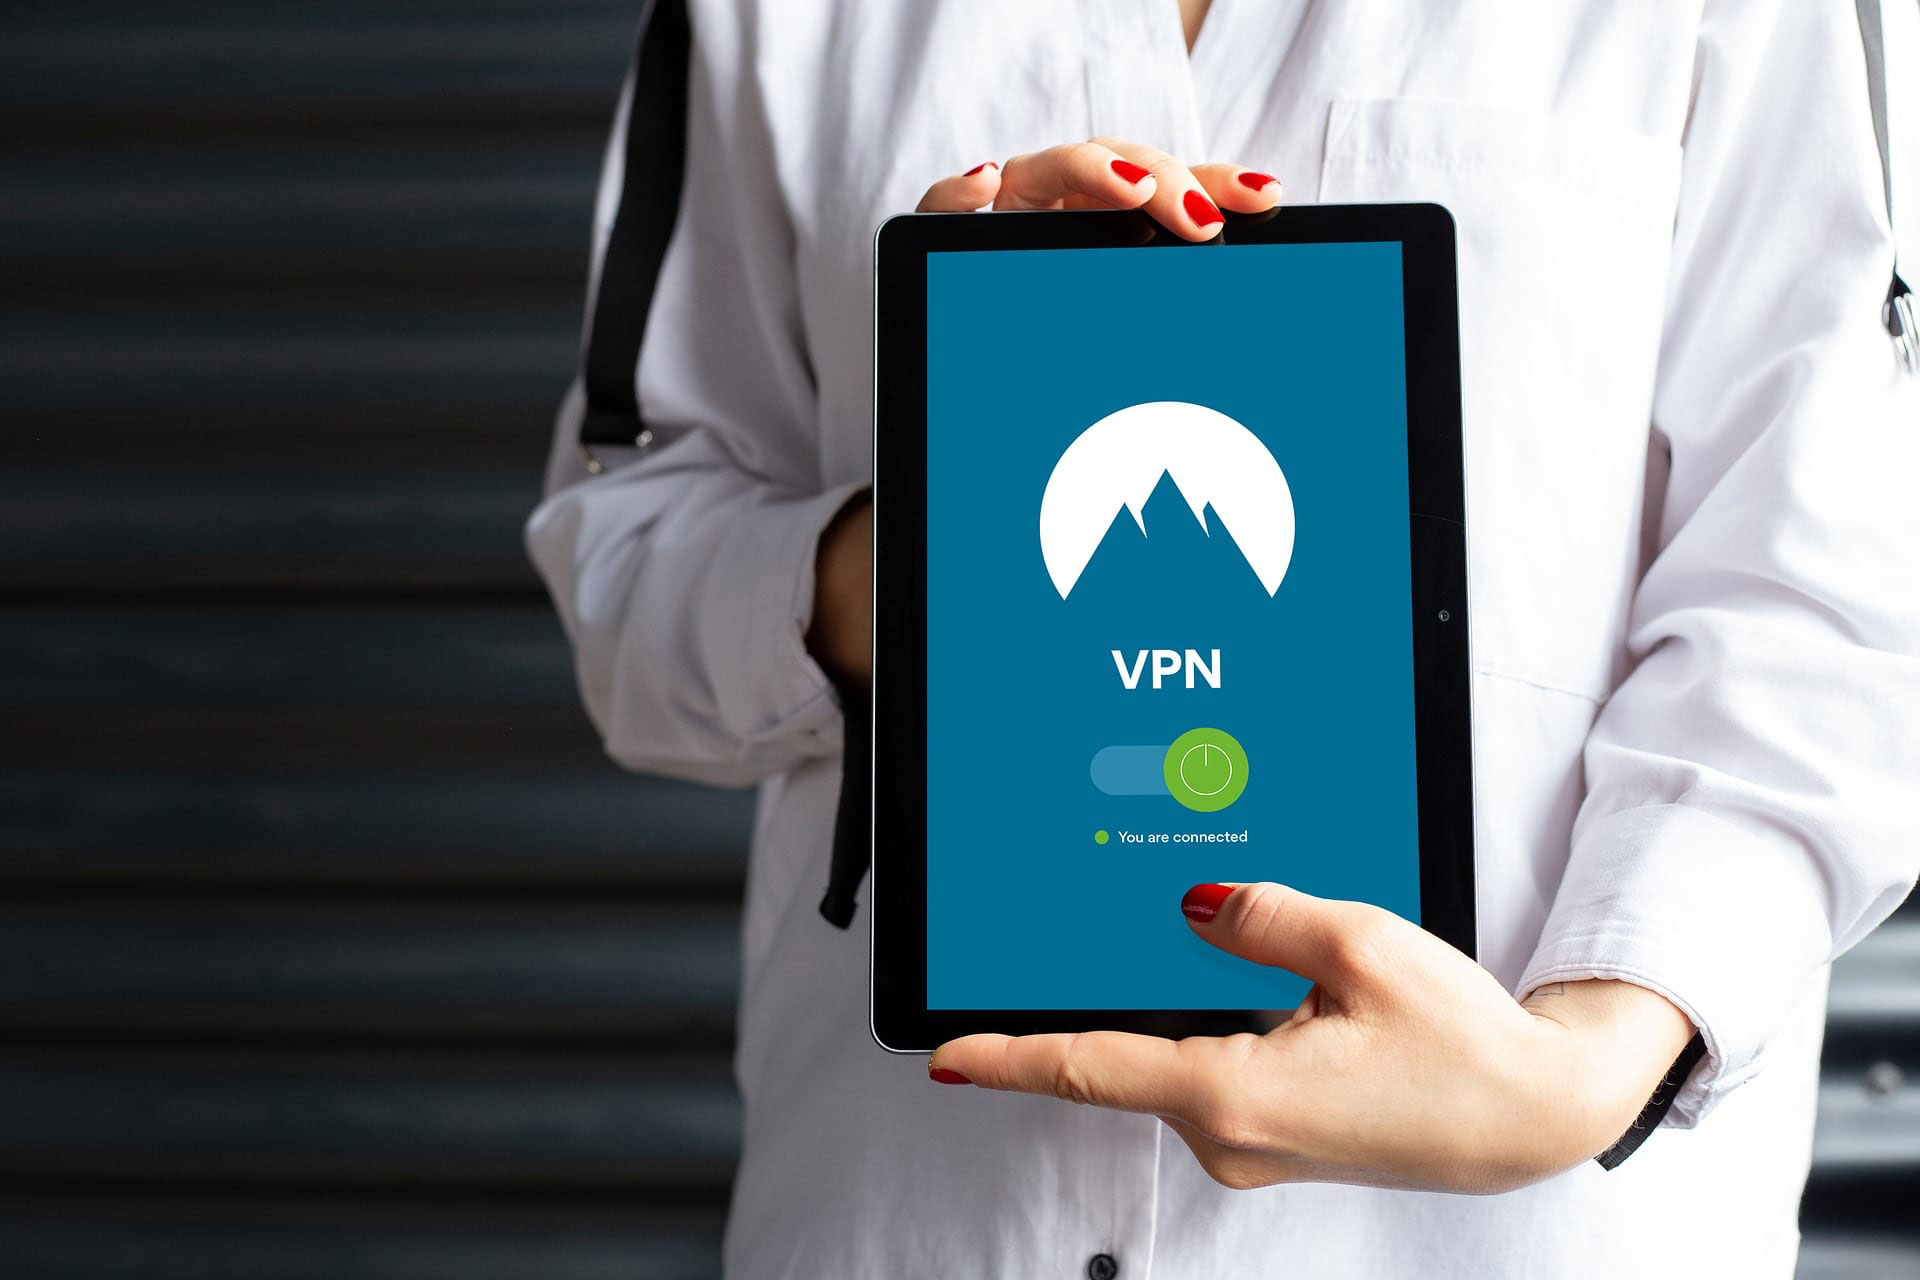 Bahaya Menggunakan VPN